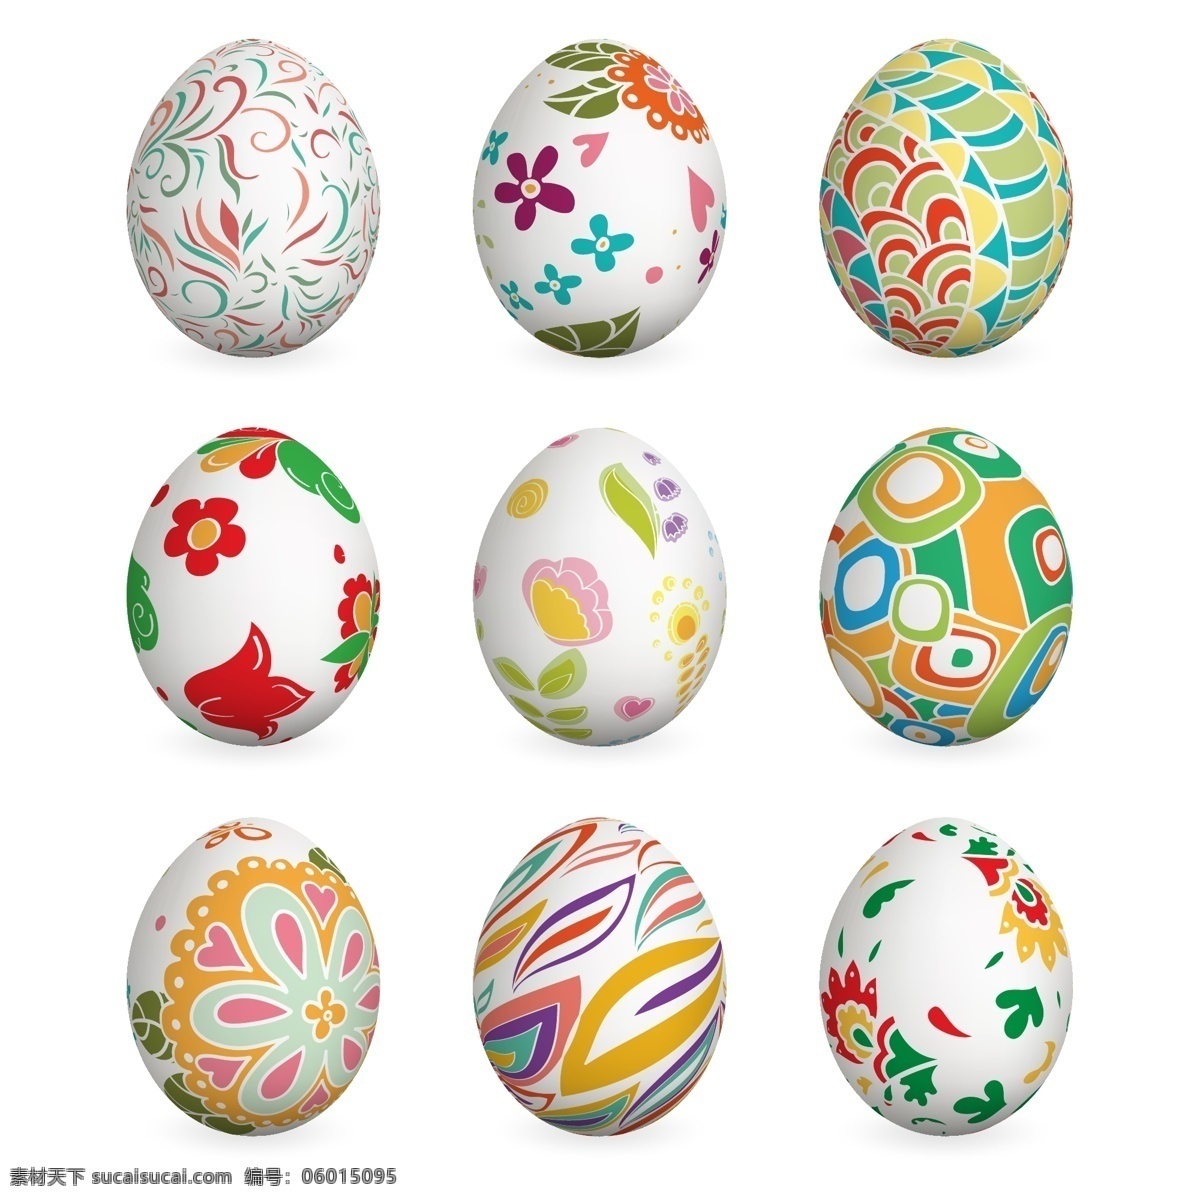 复活节 彩蛋 矢量 复活节彩蛋 复活节素材 彩蛋矢量 彩蛋素材 共享设计矢量 文化艺术 节日庆祝